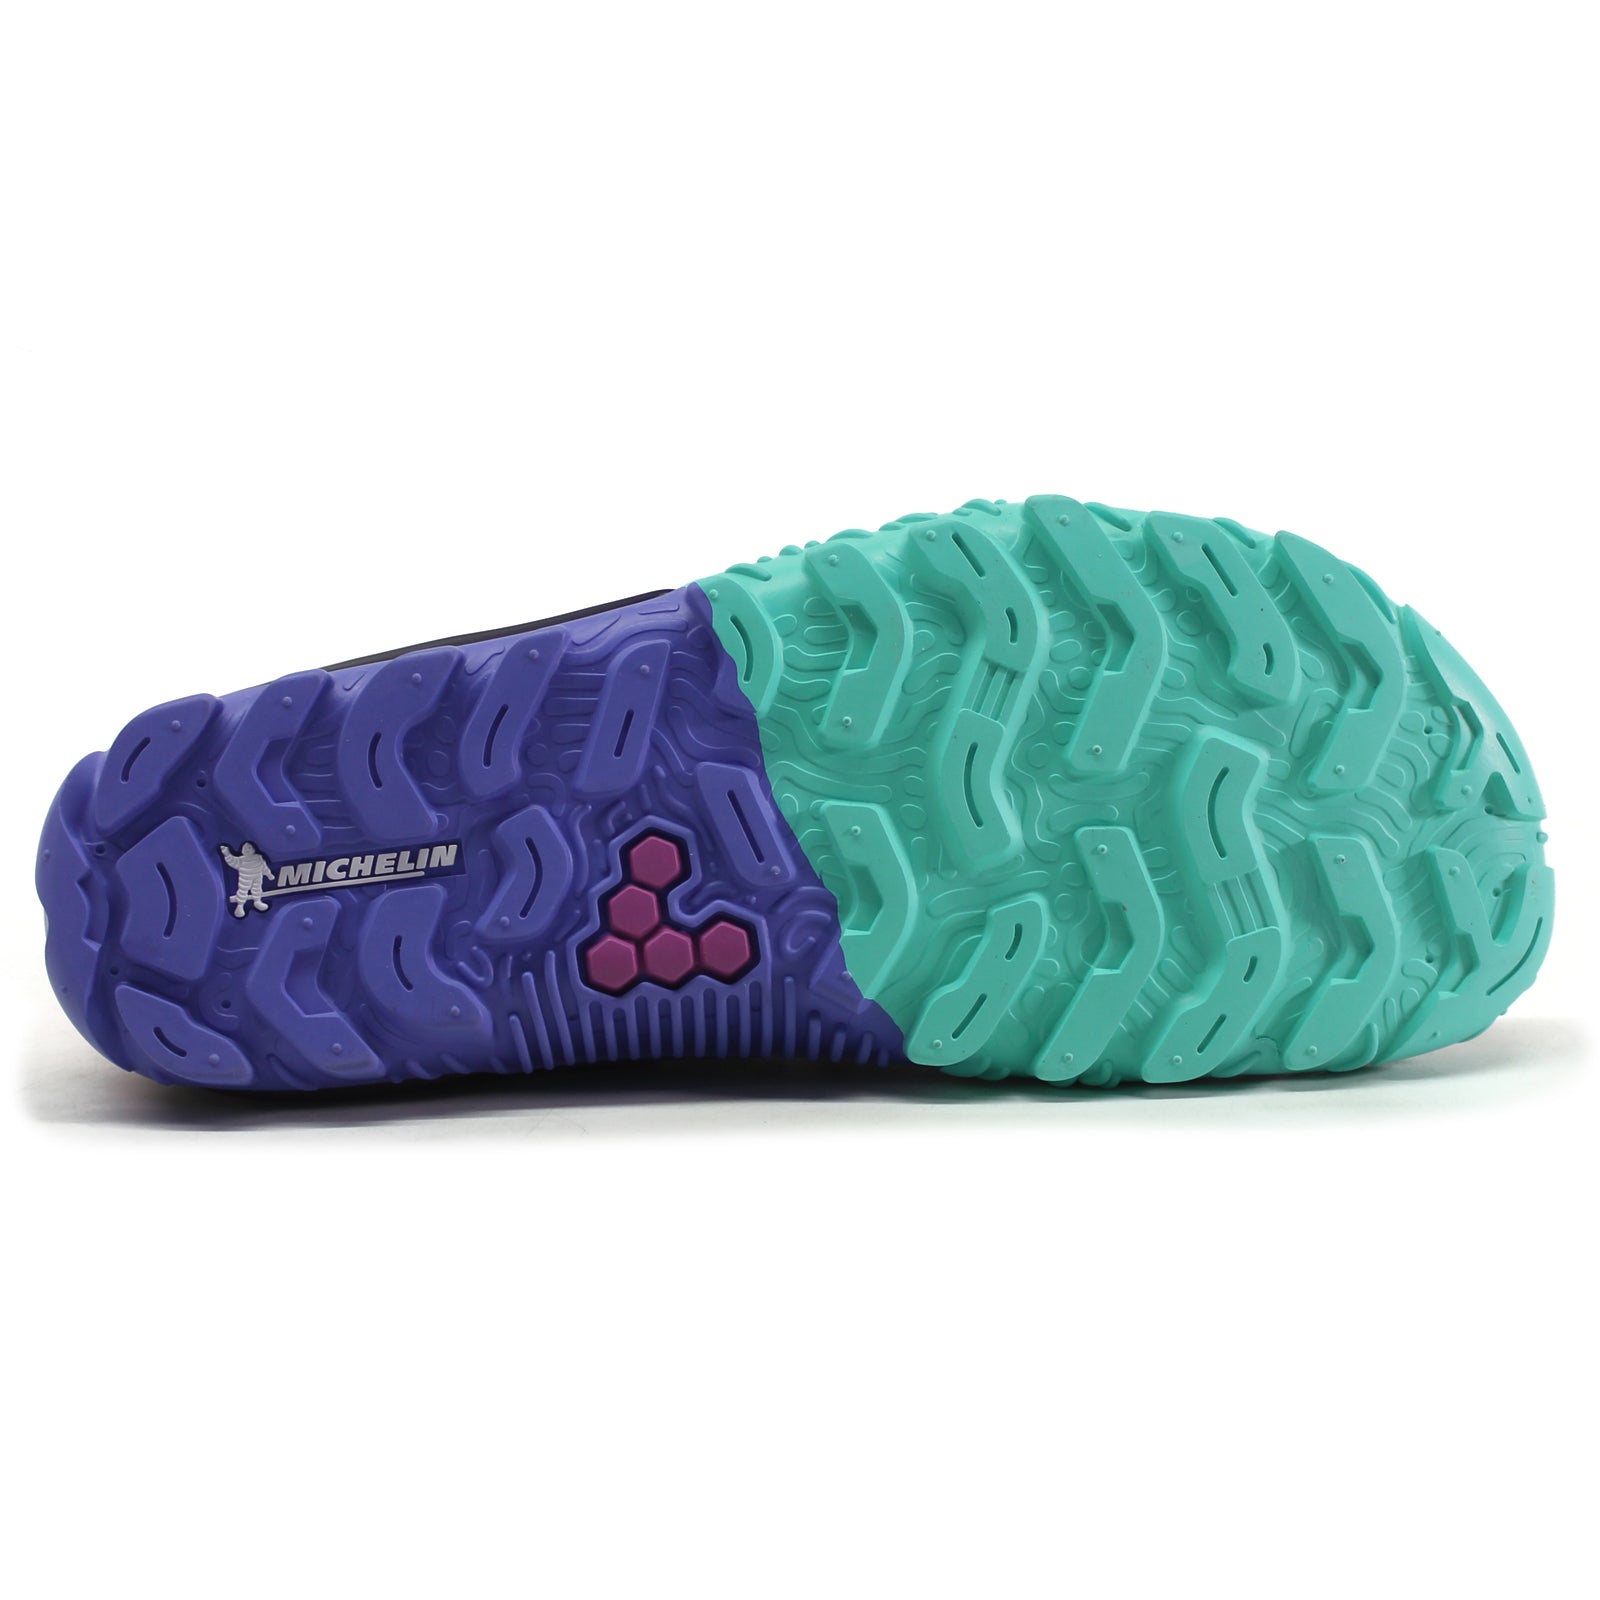 Vivobarefoot Hydra Esc Synthetic Textile Men's Sneakers#color_seagreen